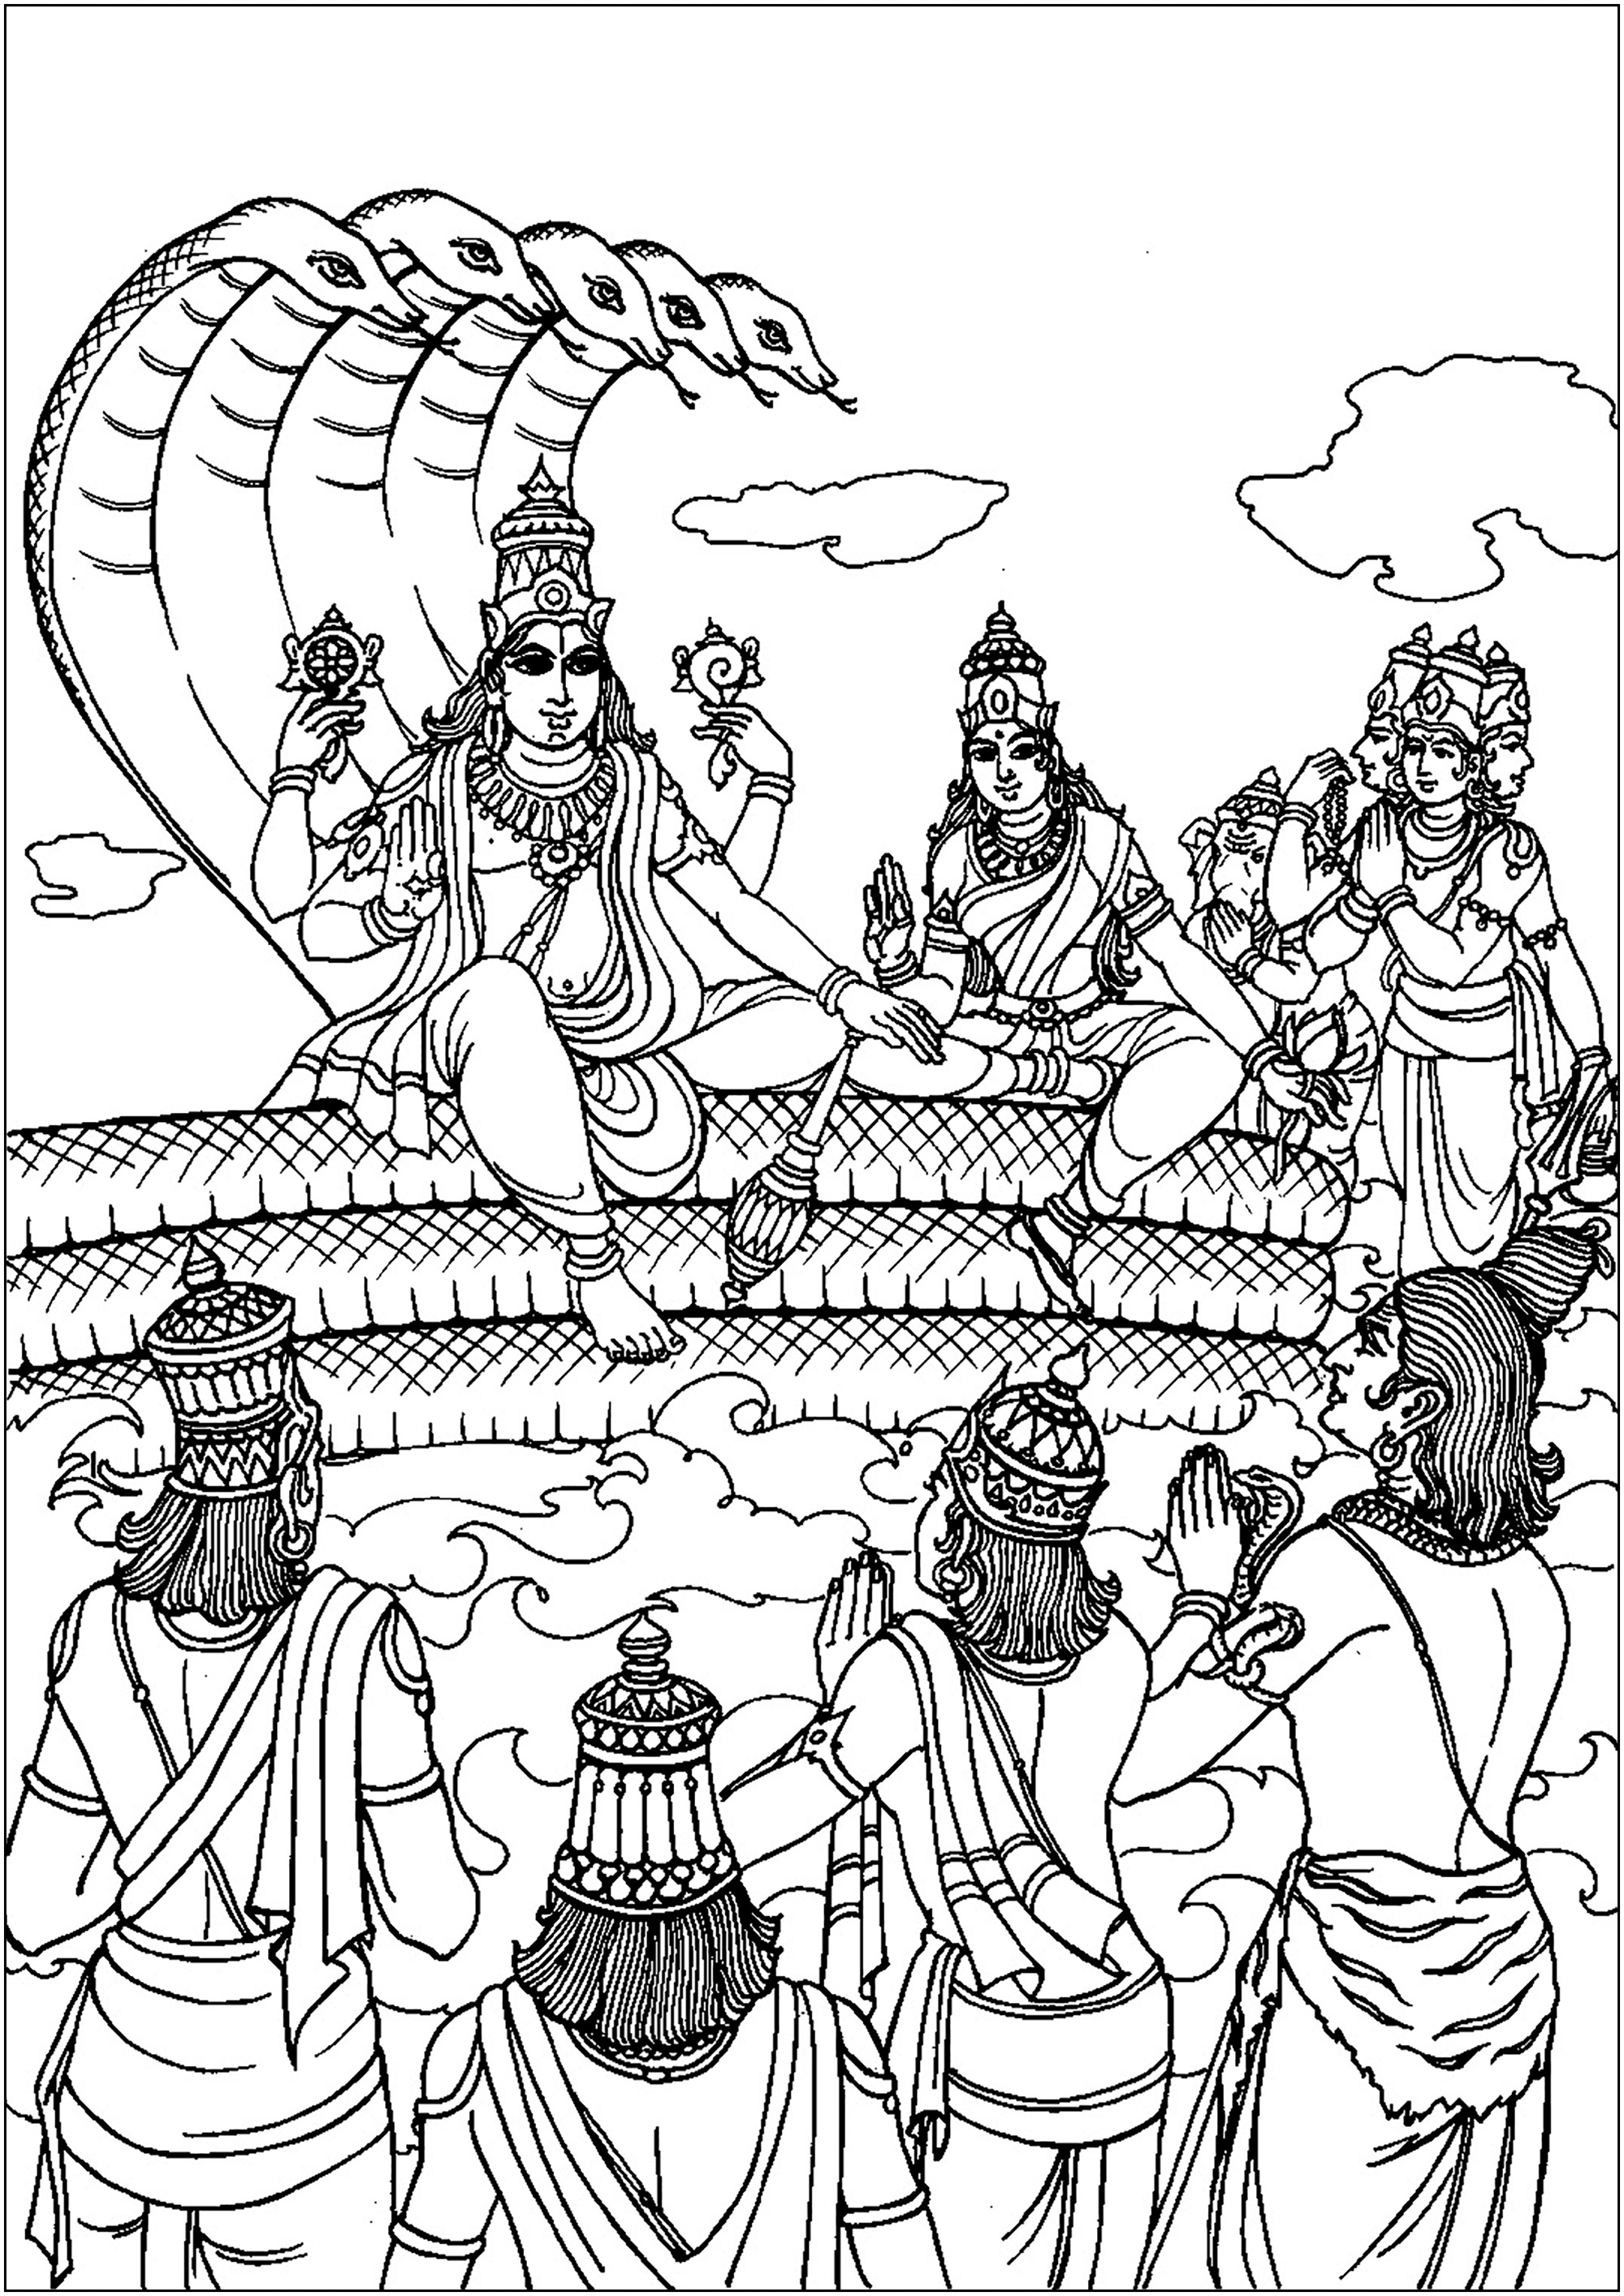 Vishnu que toma forma humana : Rama, para visitar a los hombres. Visnú es una deidad principal del hinduismo, considerada la preservadora del universo.A menudo se le representa descansando sobre la serpiente divina, Ananta Shesha, con cuatro brazos que sostienen símbolos sagrados. Vishnu encarna la benevolencia e interviene periódicamente en el mundo bajo diferentes avatares (encarnaciones) para restablecer el orden cósmico y proteger la virtud.